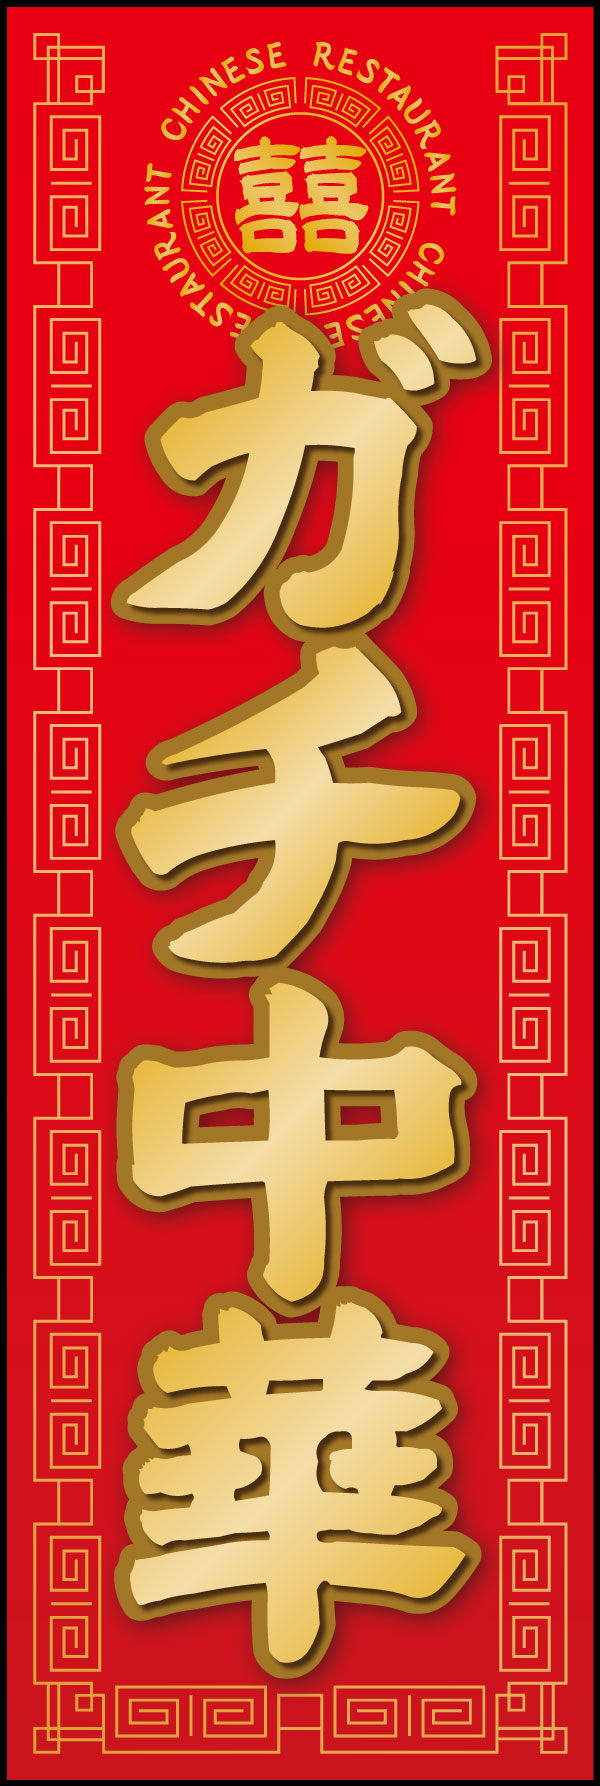 ガチ中華 6 「ガチ中華」の幟です。本場中国の料理が楽しめるお店にぴったりなデザインにしました。(Y.M)